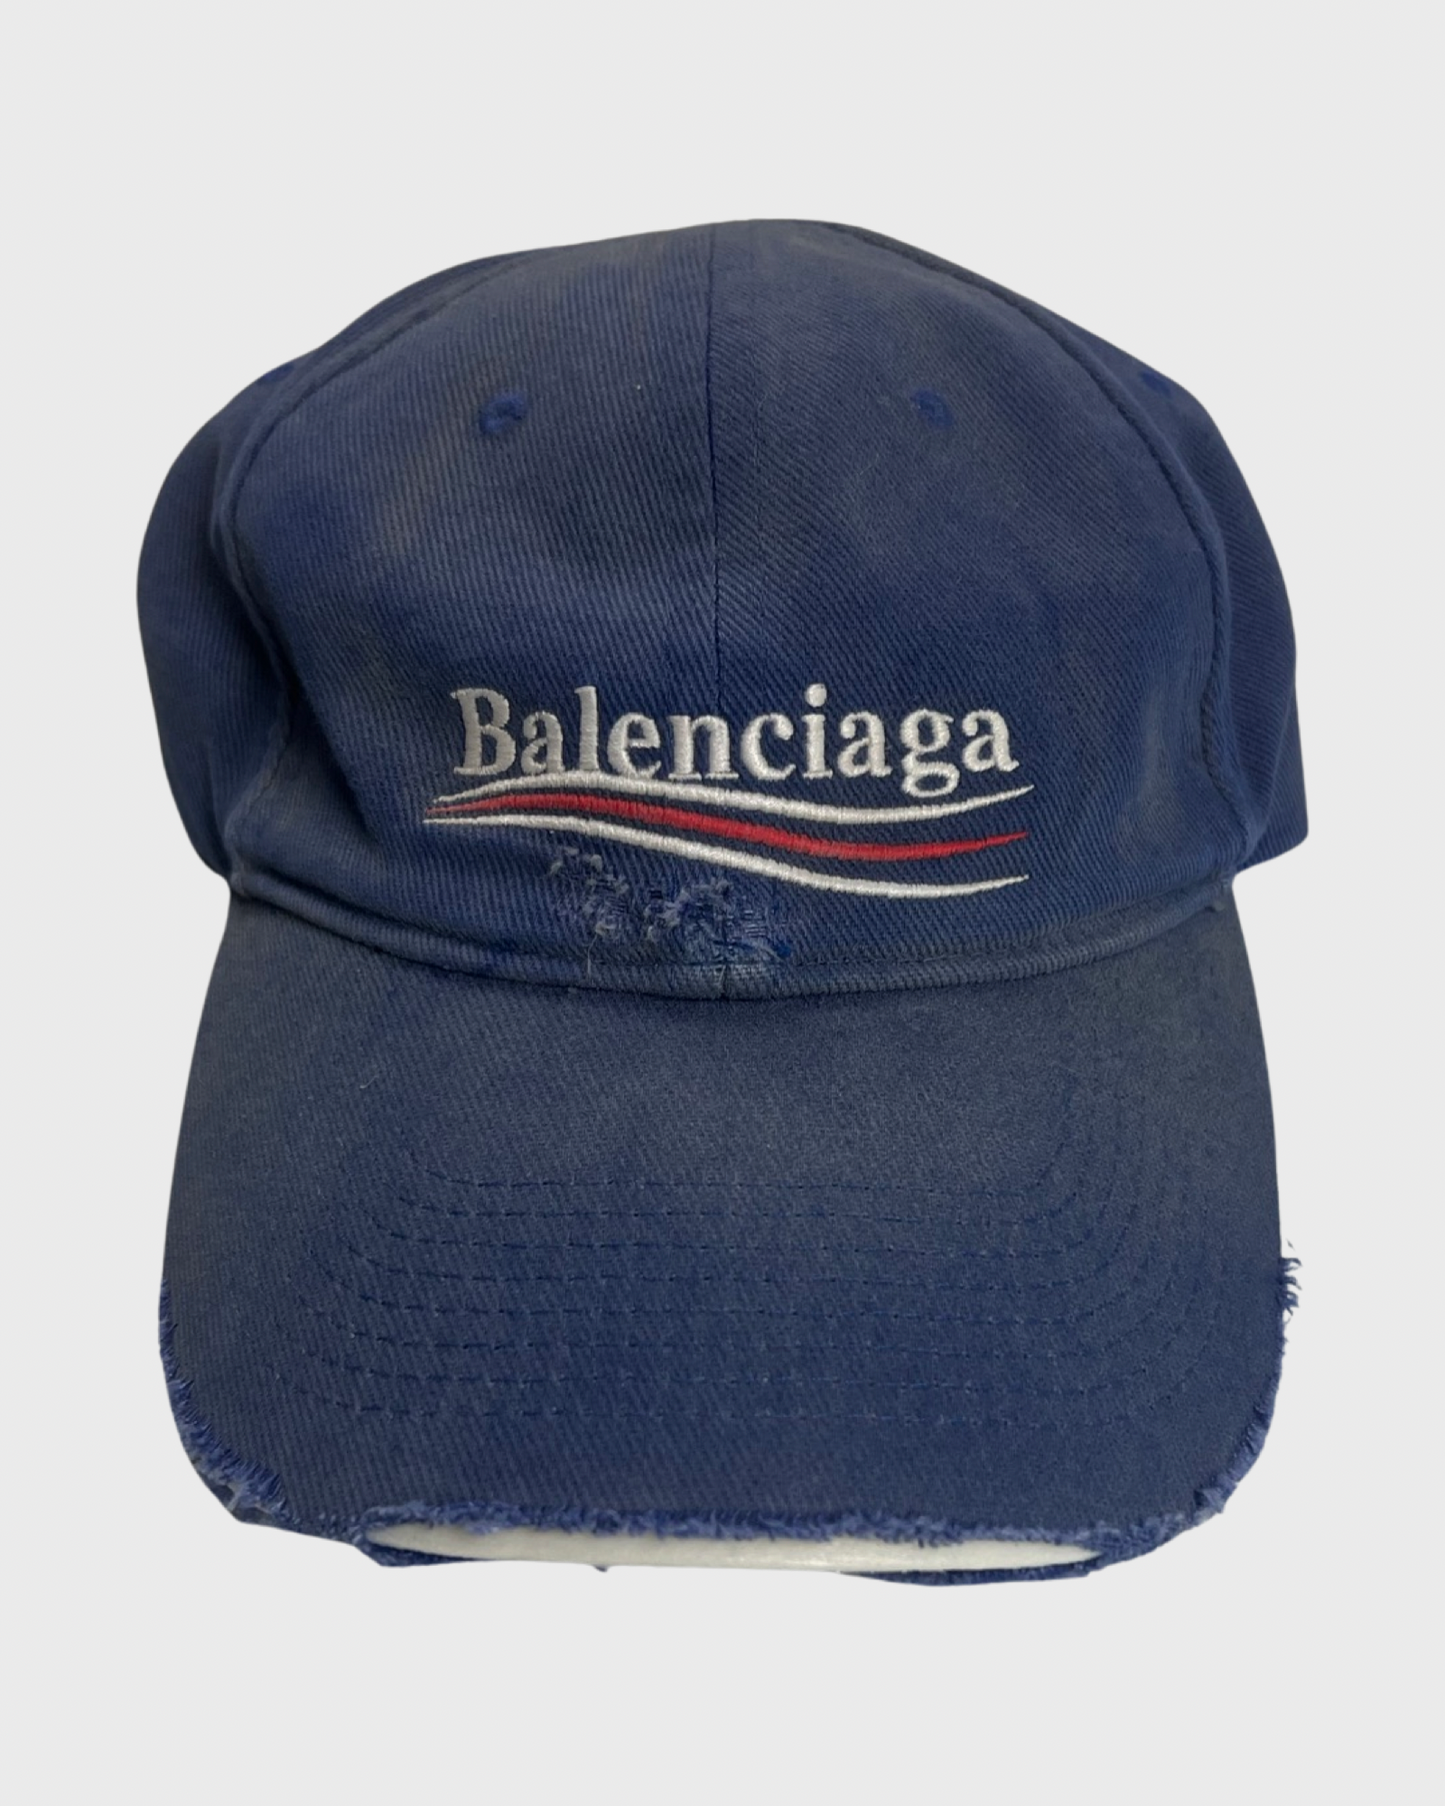 Balenciaga distressed campaign logo cap Hat blue SZ:L